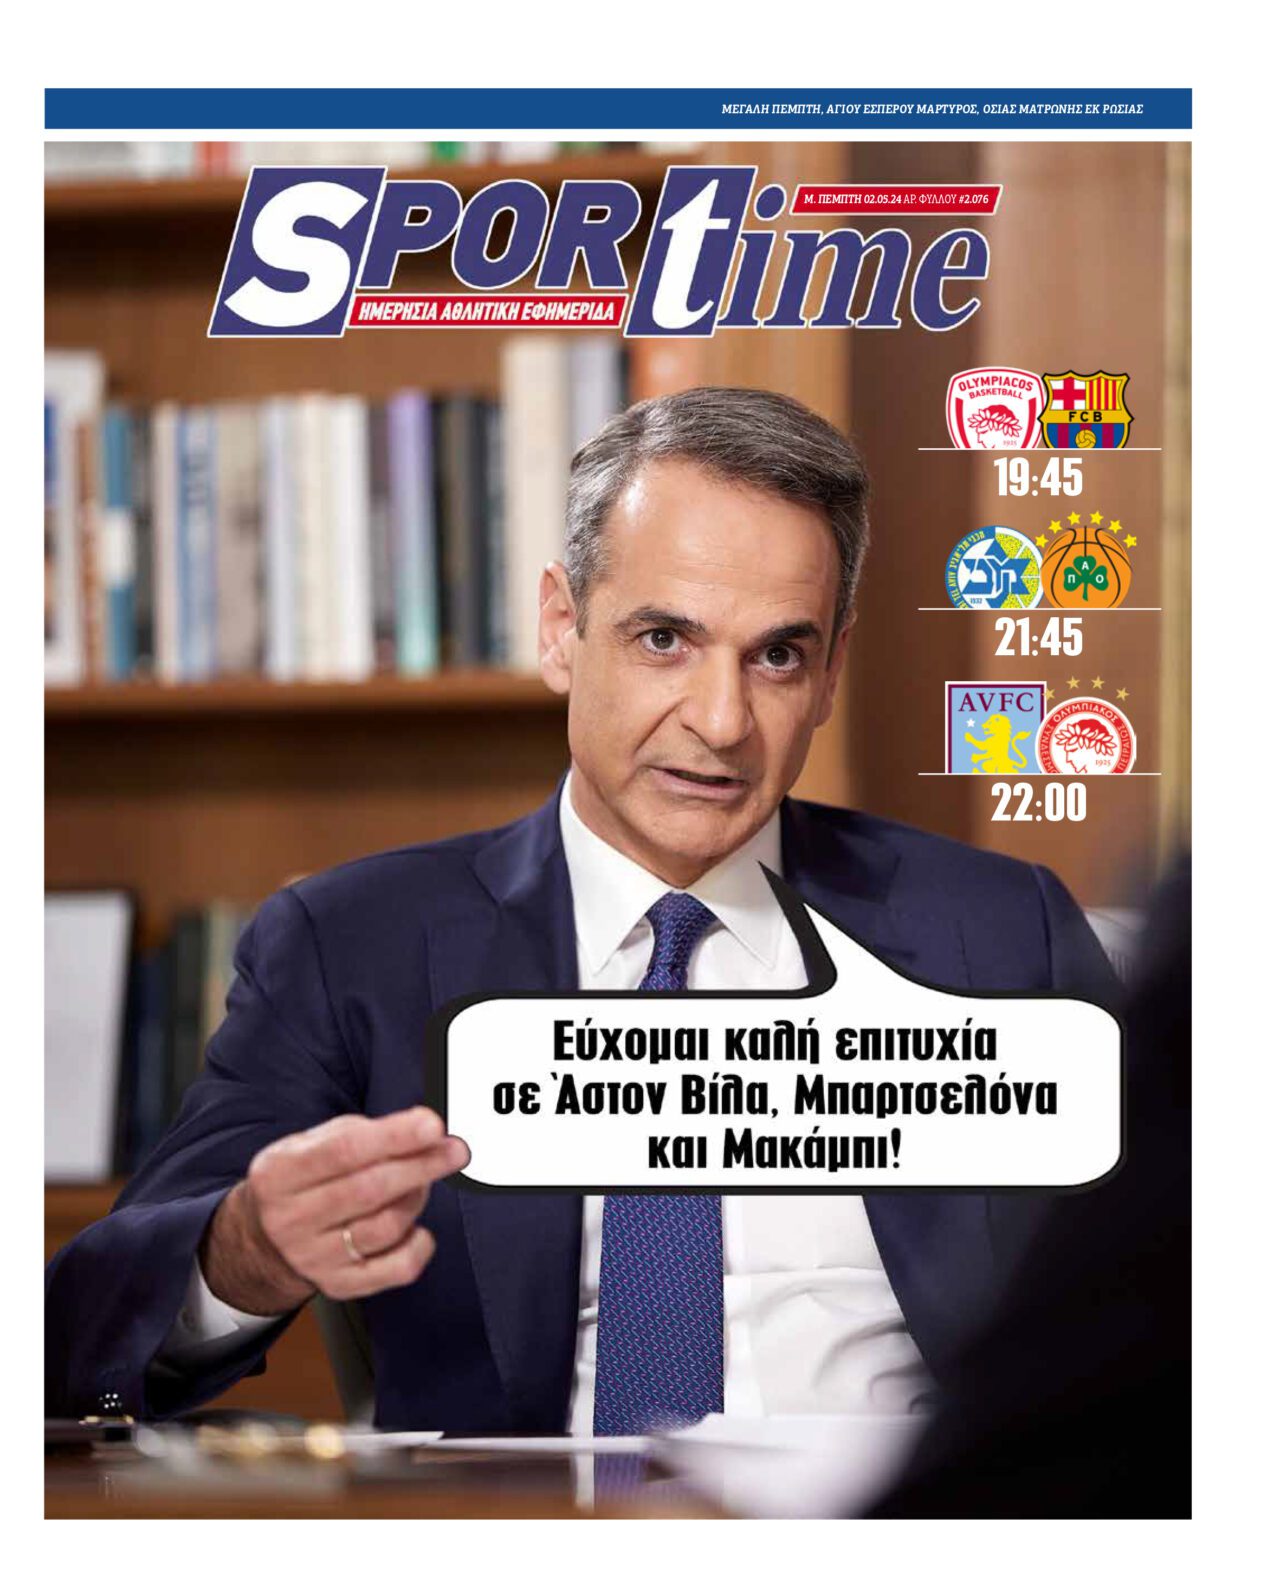 Πρωτοσέλιδο Sportime 2-5